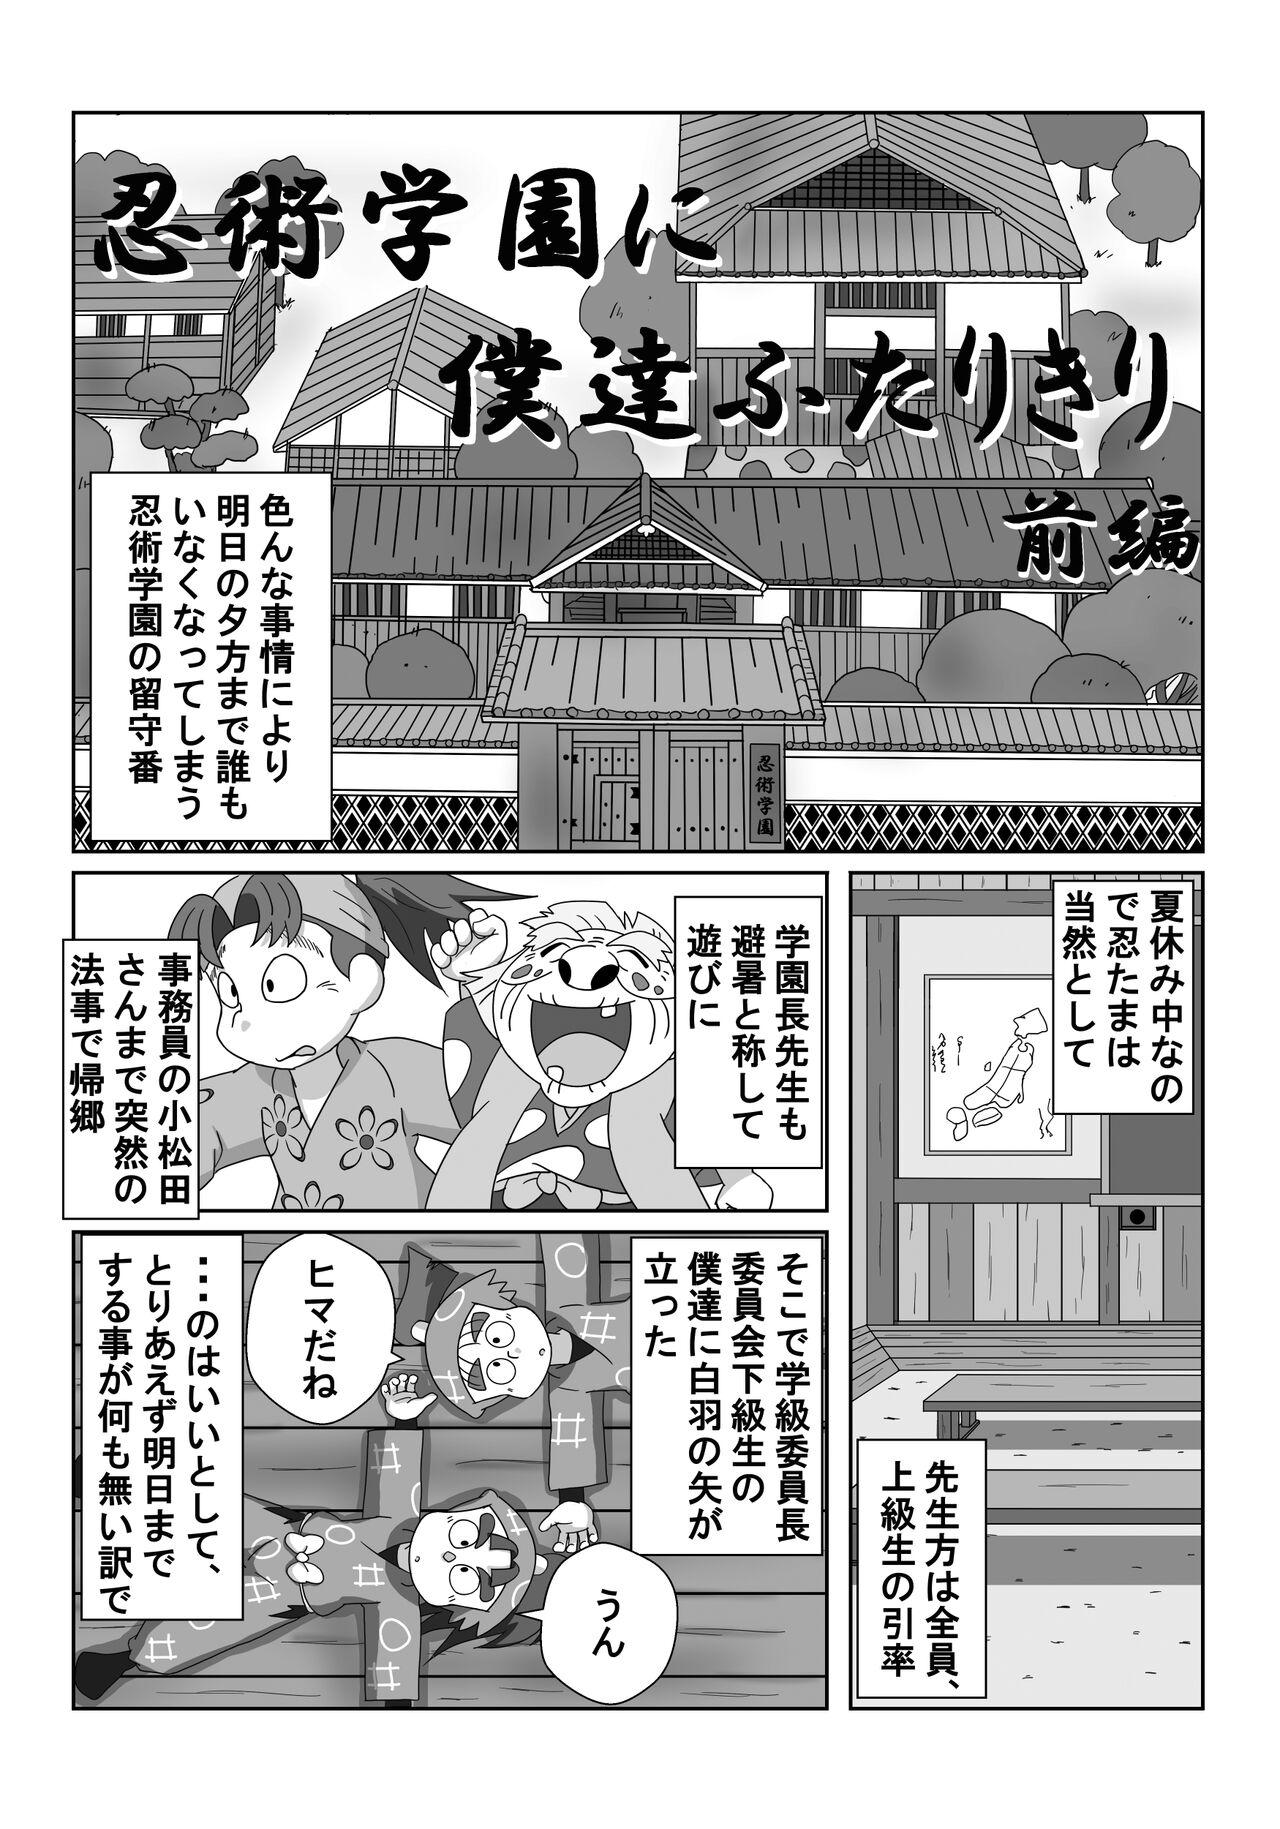 Coroa Ninjutsu Gakuen ni Bokutachi Futarikiri - Part 1 - Nintama rantarou Sentando - Page 3